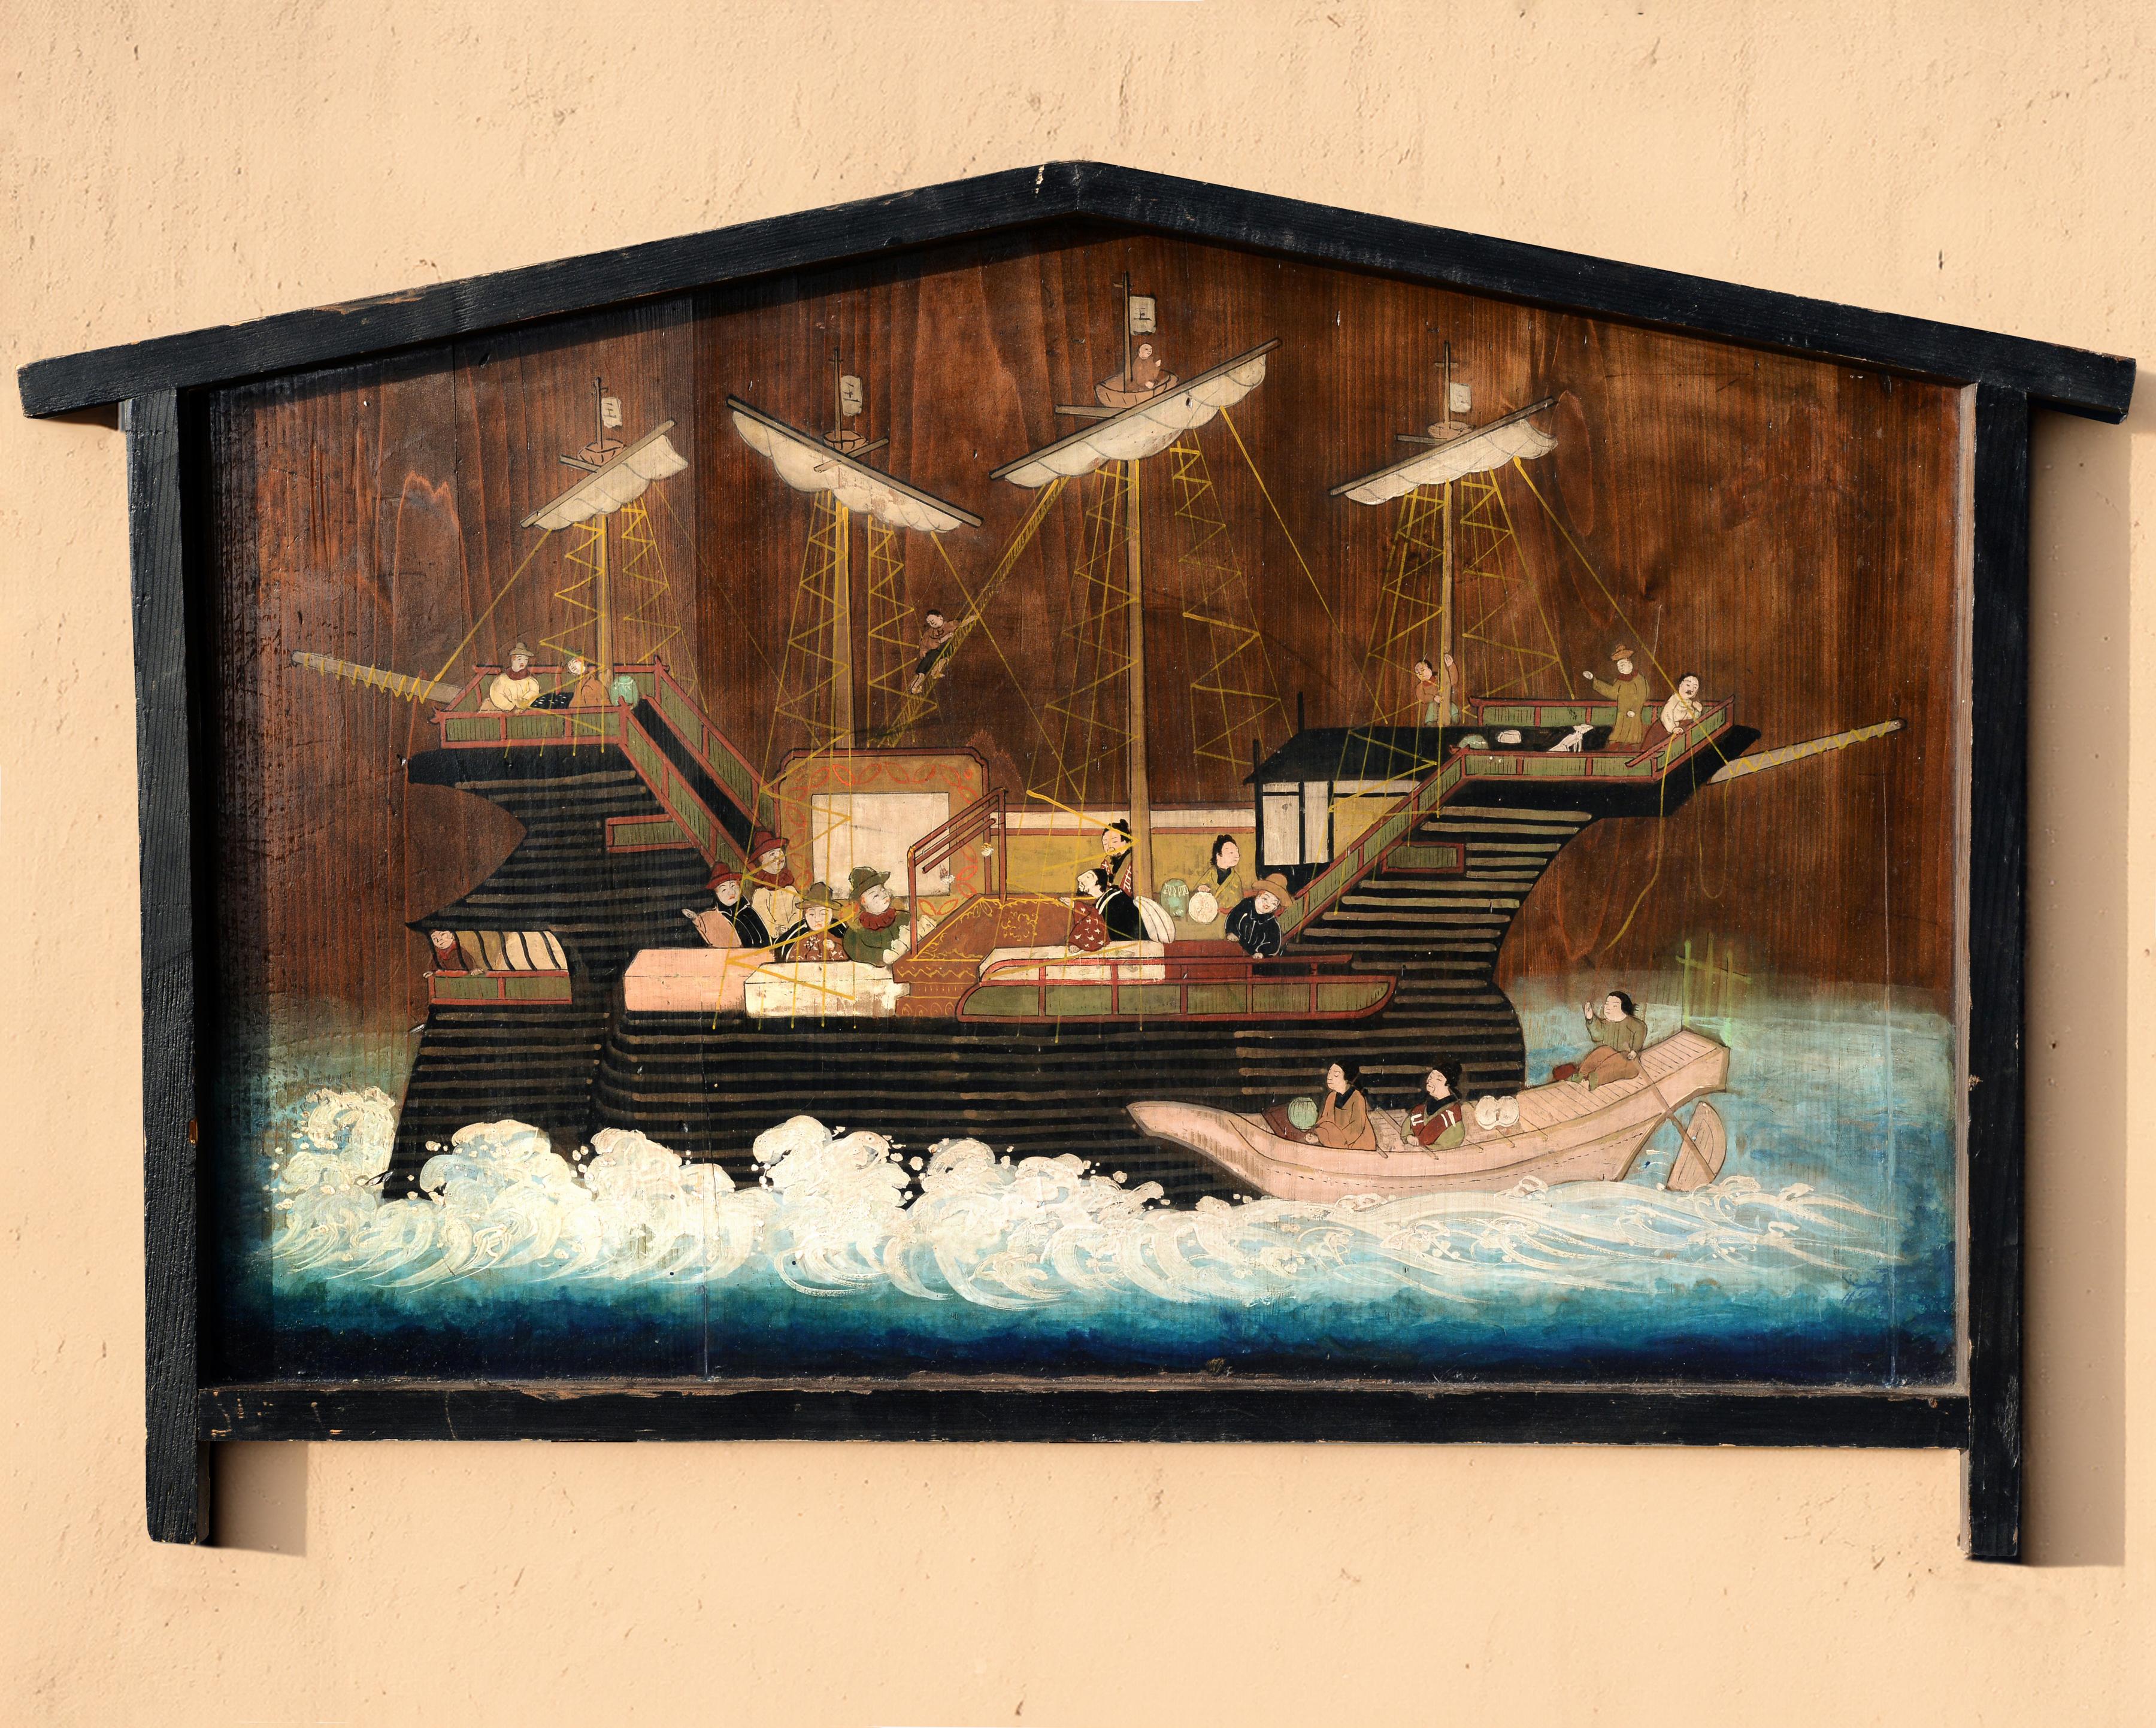 Grande planche de bois japonaise Ema Namban représentant un navire portugais de la période Edo